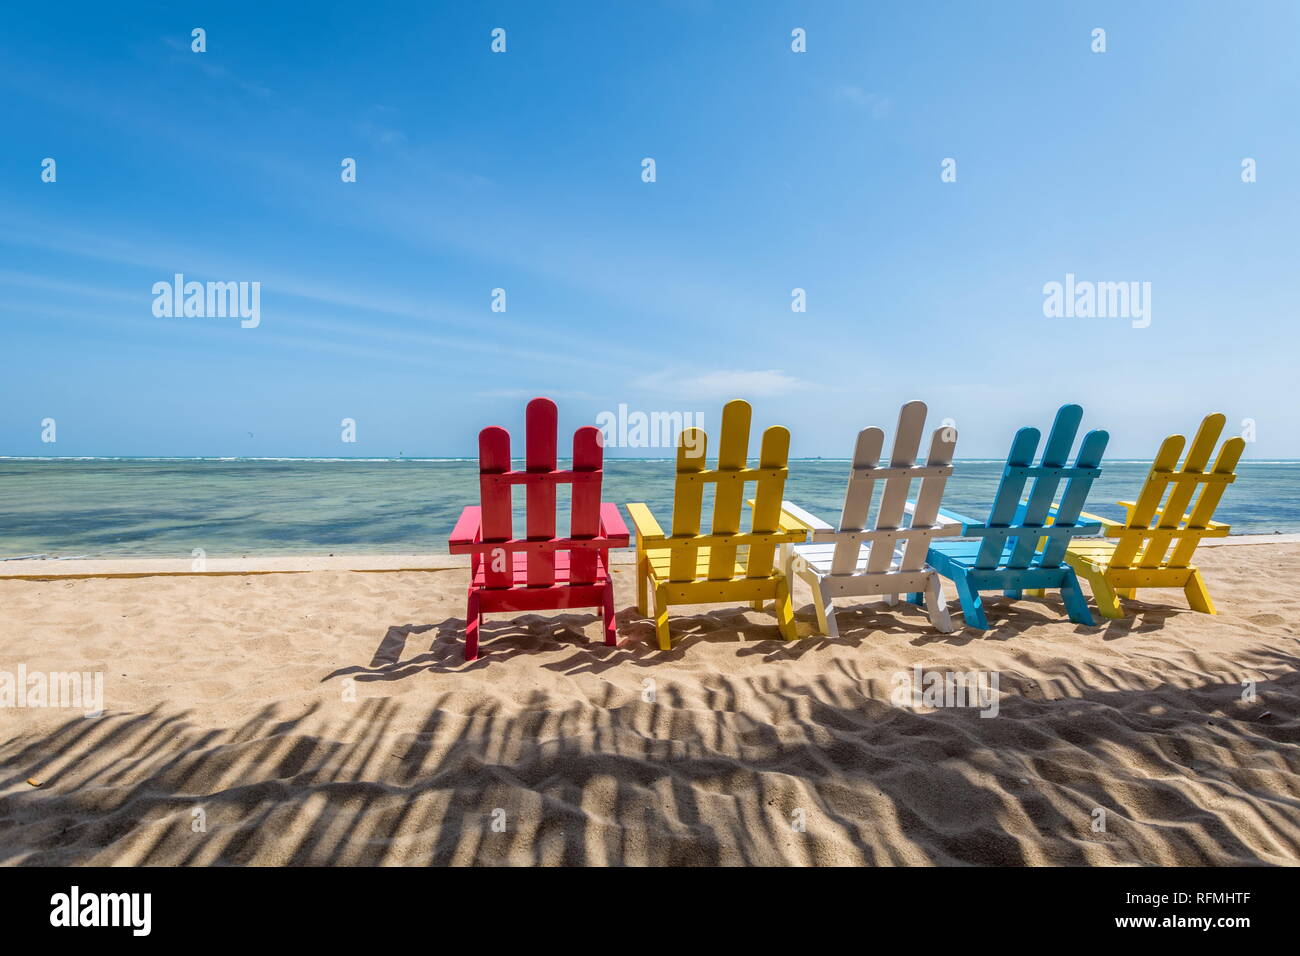 Beach front place pour méditer - romantique paysage de mer avec des chaises colorées Banque D'Images